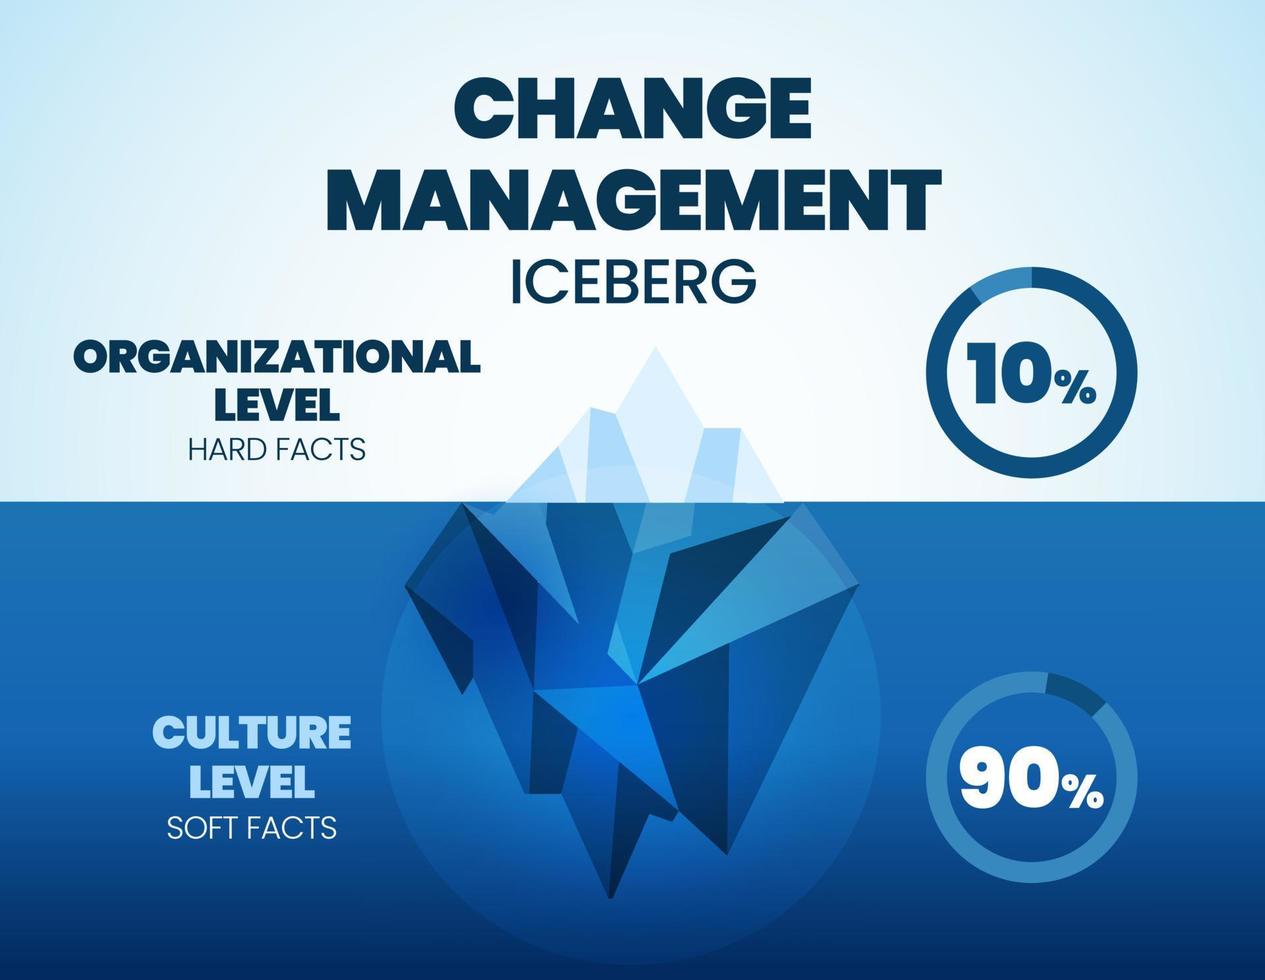 modelo de iceberg de ilustração vetorial de gerenciamento de mudanças é 90 níveis de cultura de fatos leves escondidos debaixo d'água e 10 níveis de organização de fatos concretos. o infográfico é para a estratégia de gestão de recursos humanos vetor